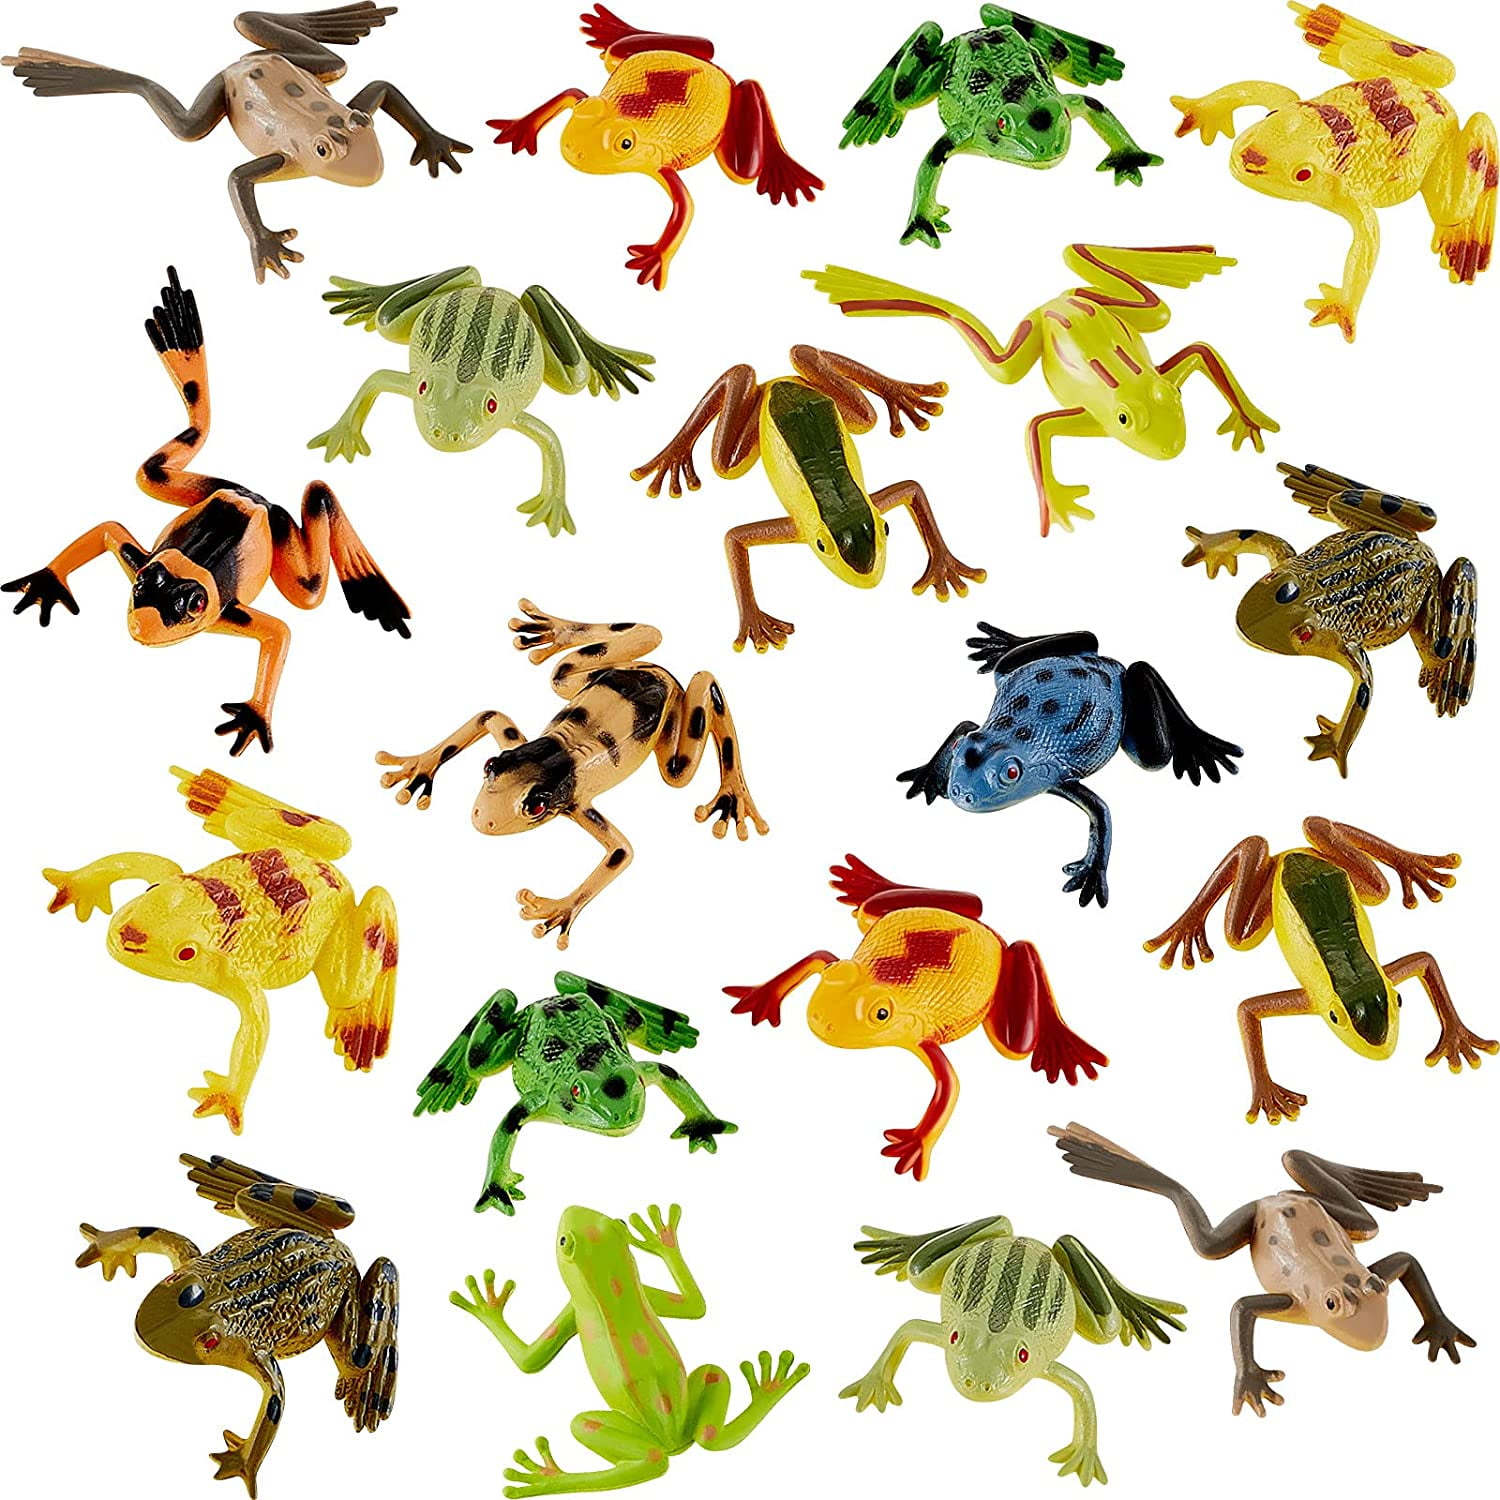 Plastic Frogs Toy Mini Vinyl Realistic